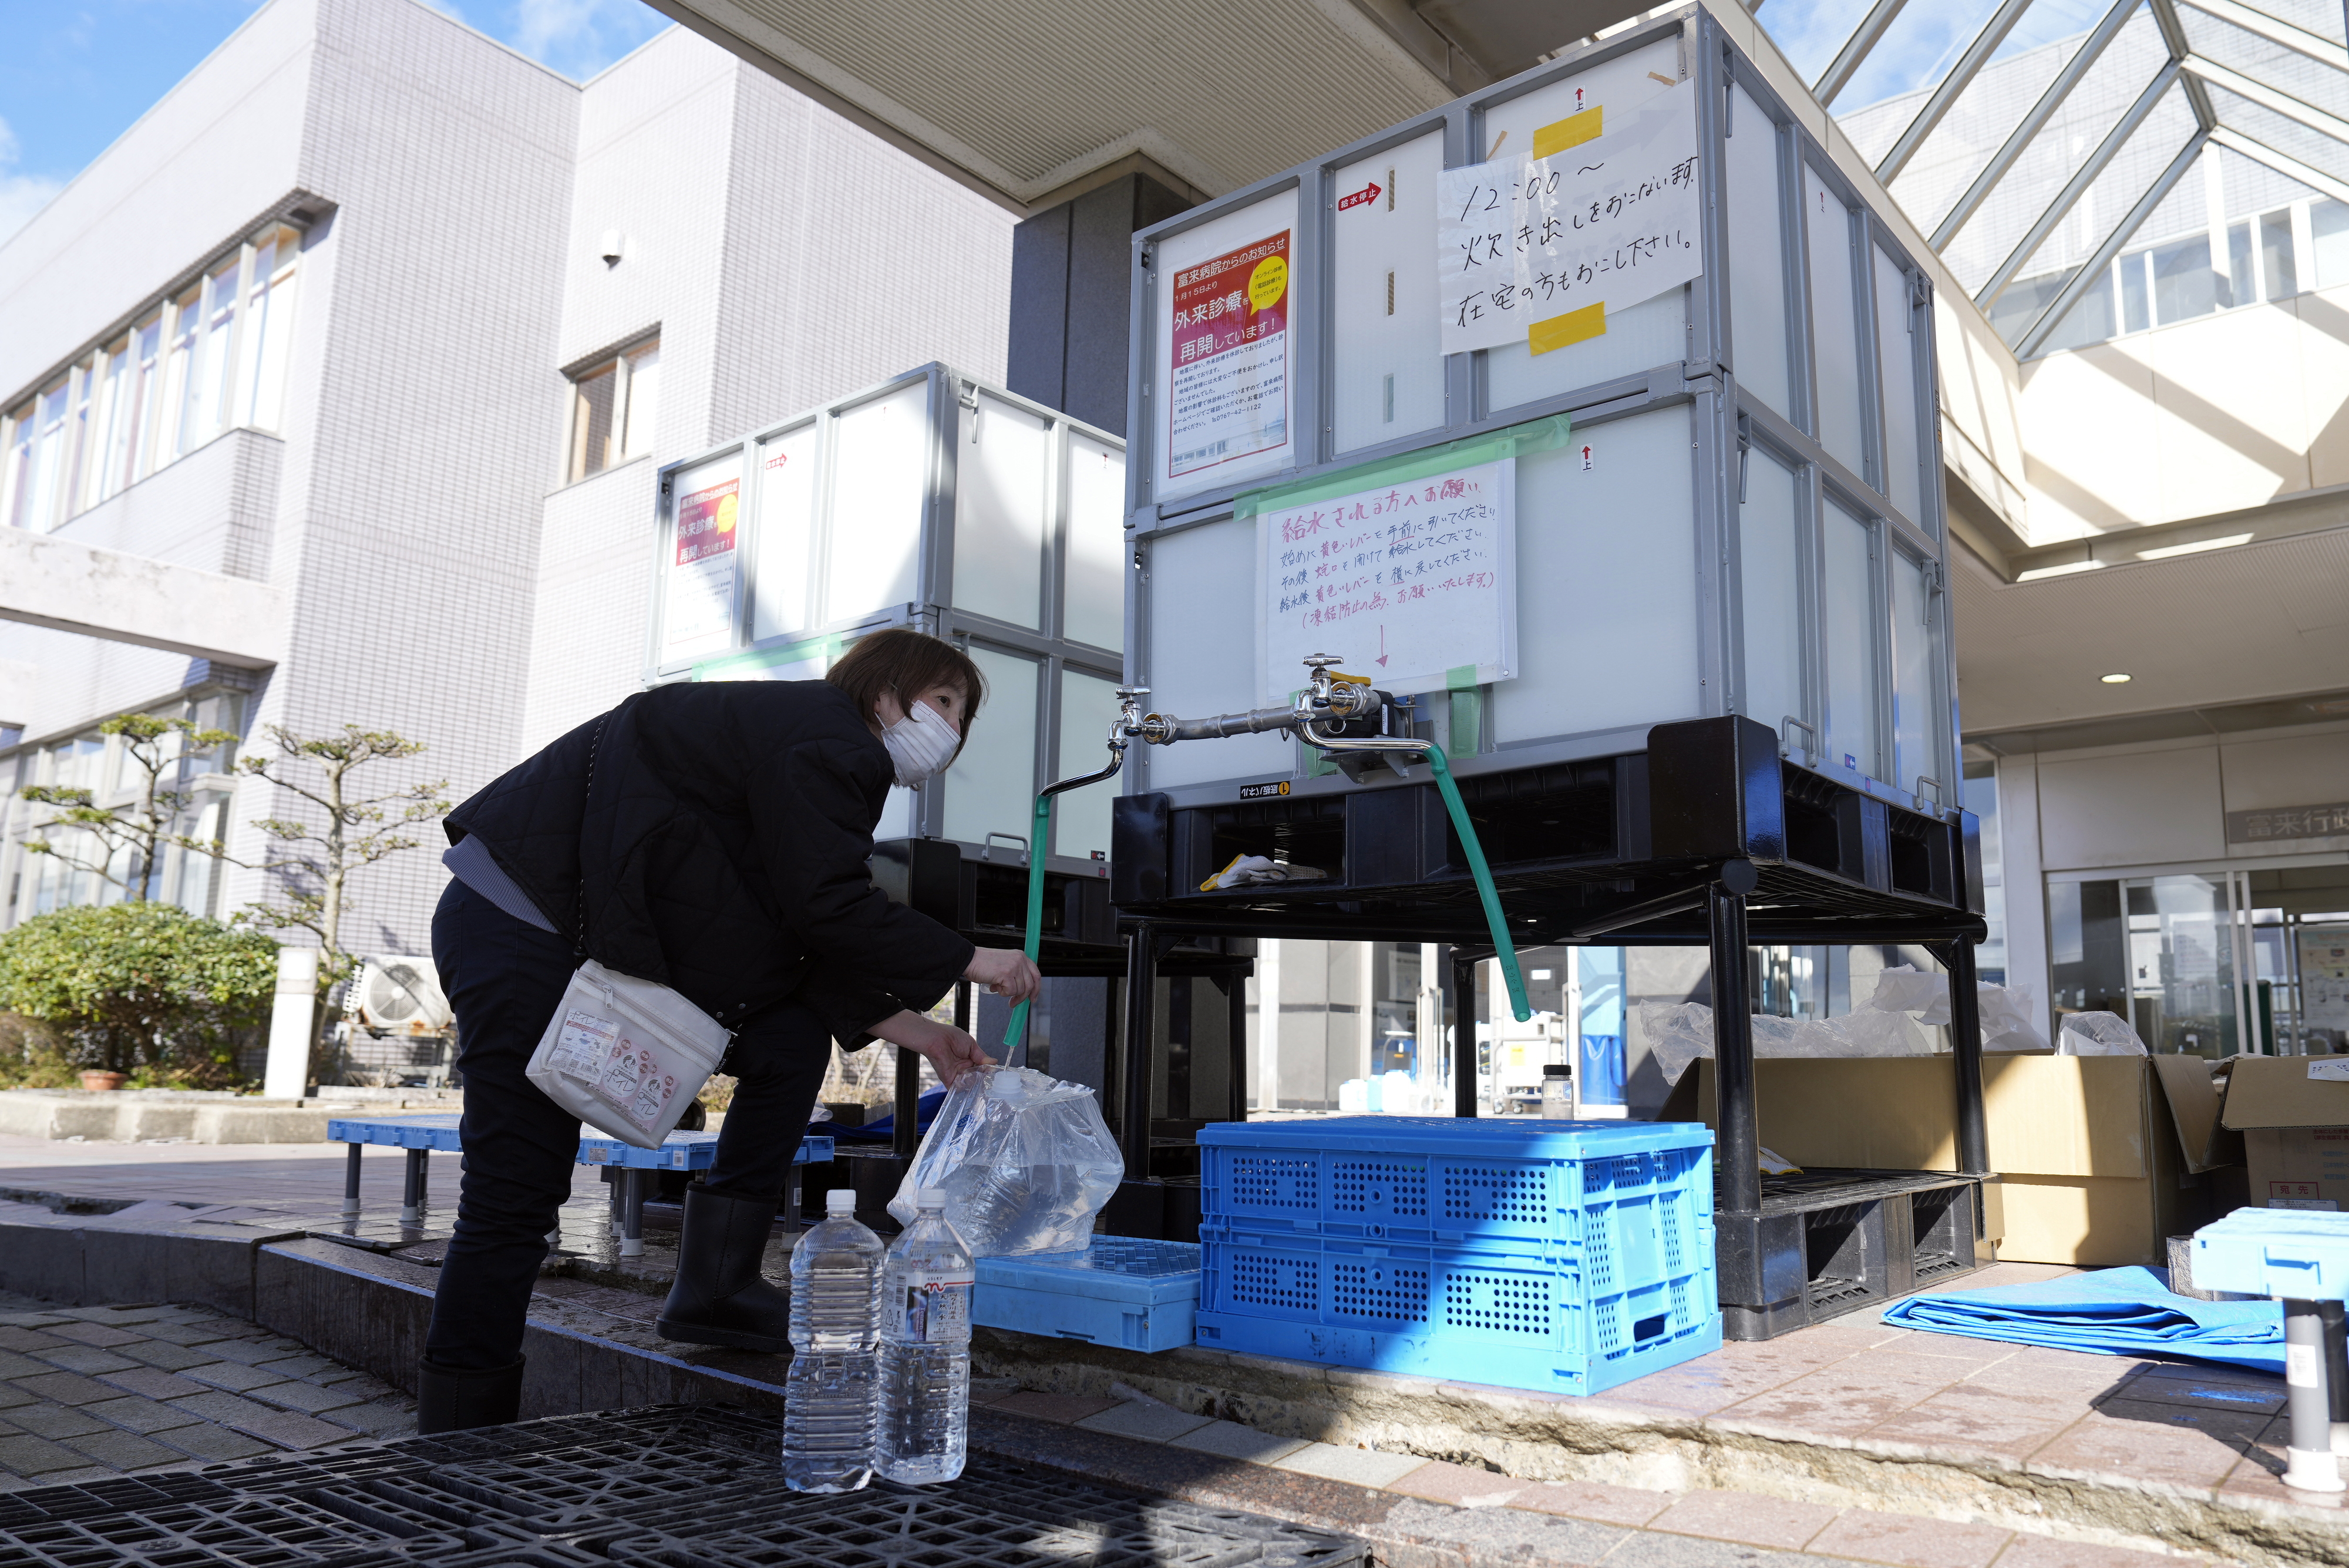 지난 29일 일본 이시카와현 시카마치의 한 대피소에서 피난민이 페트병에 물을 받고 있다. 지난 1일 규모 7.6의 강진이 발생해 1만 5000여명의 주민들이 피난 생활을 하고 있다. 이시카와 EPA 연합뉴스